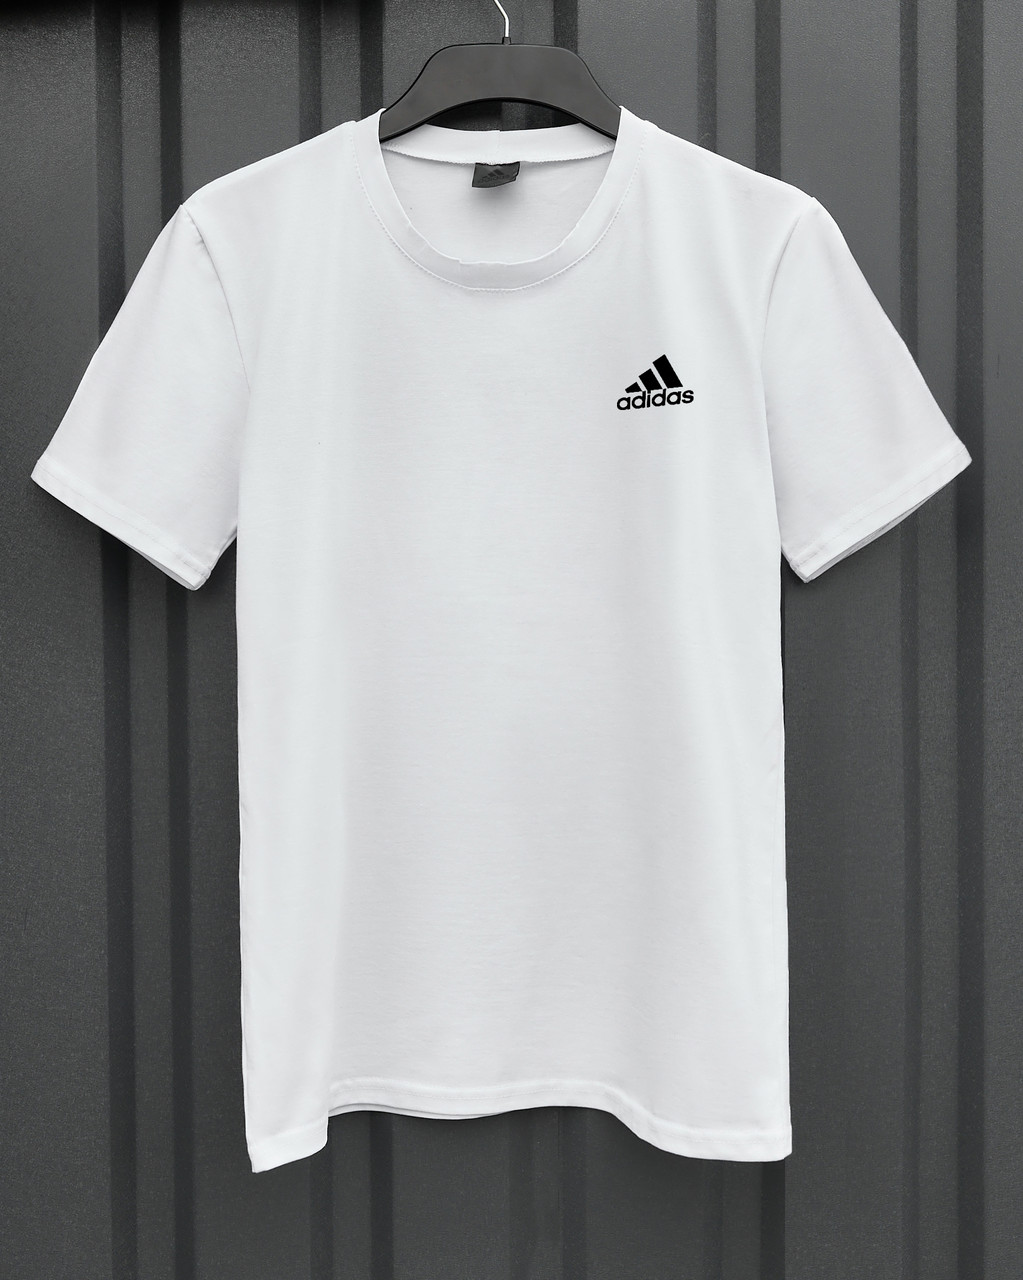 Чоловіча футболка Adidas біла спортивна бавовняна літня  ⁇  Теніска Адідас спортивна на літо